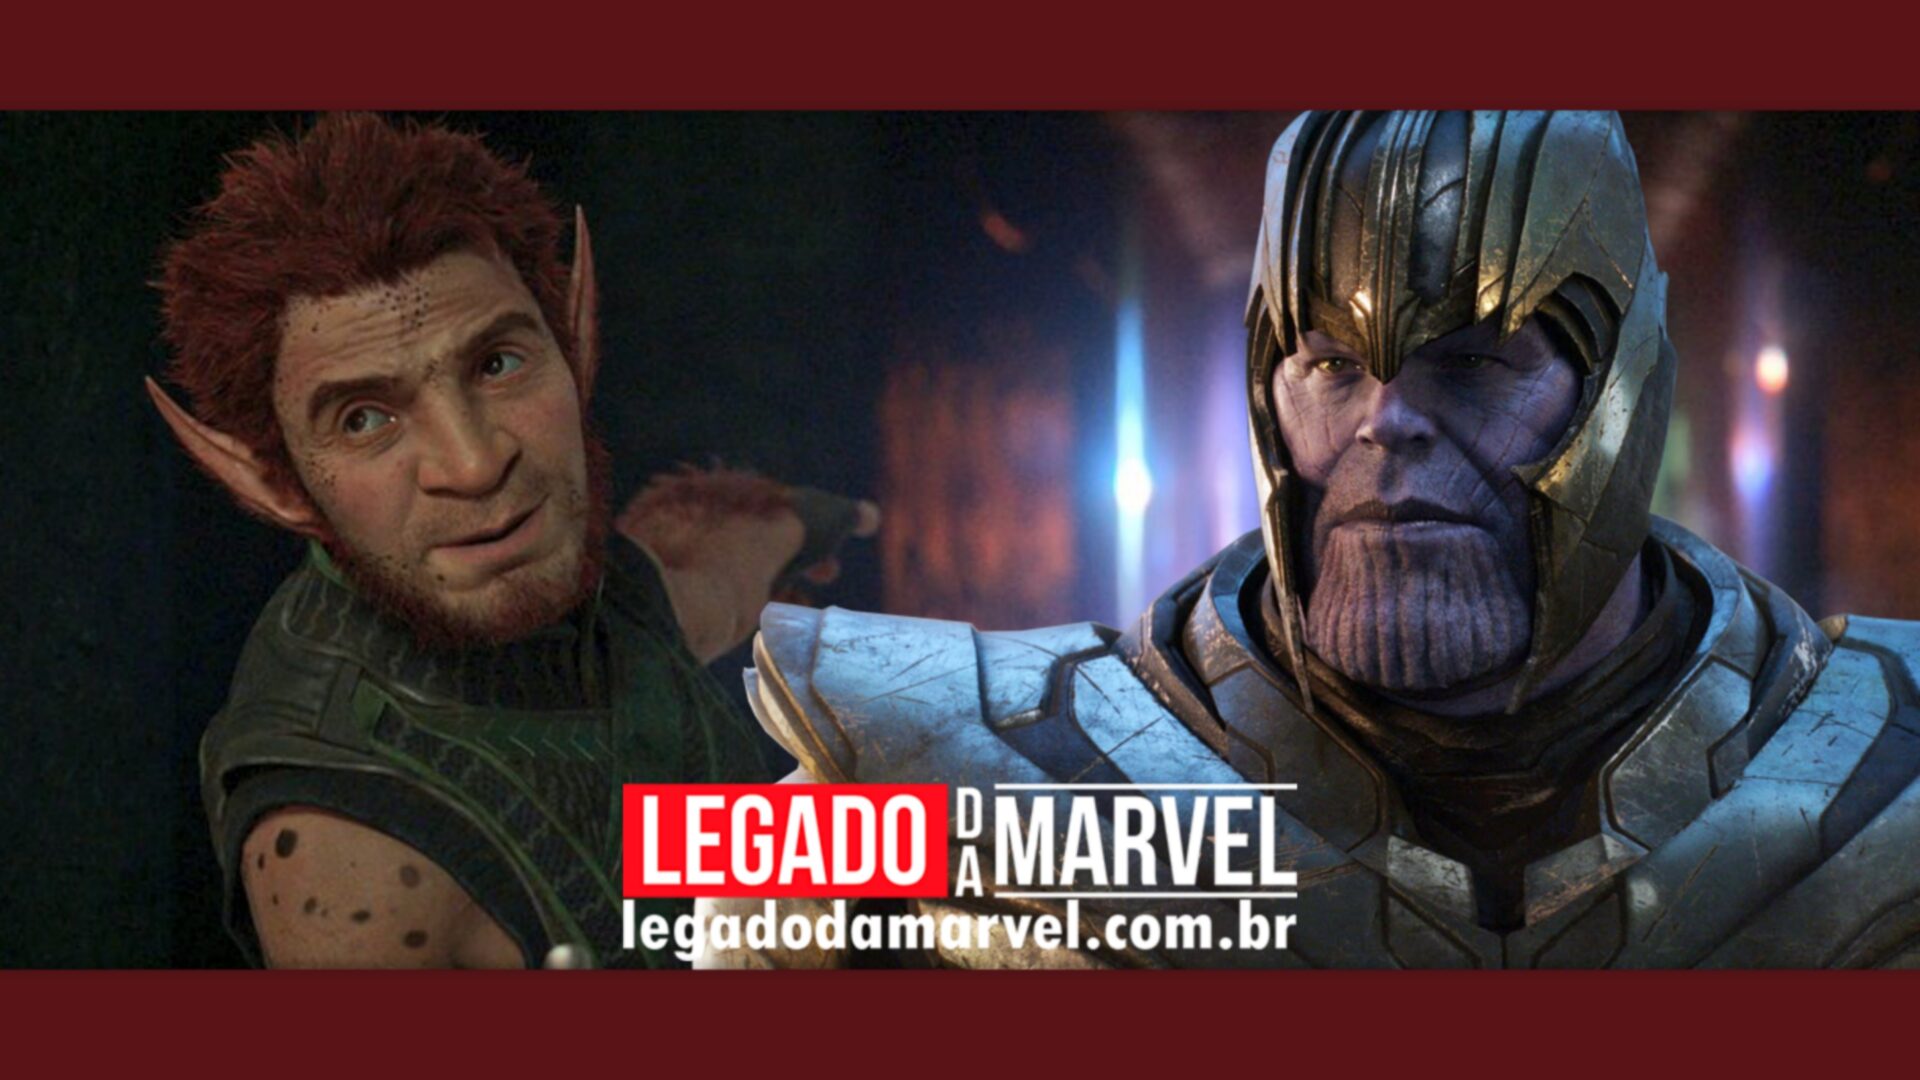  “Pior que Thanos” Escritor da Marvel sobre seu novo personagem no MCU